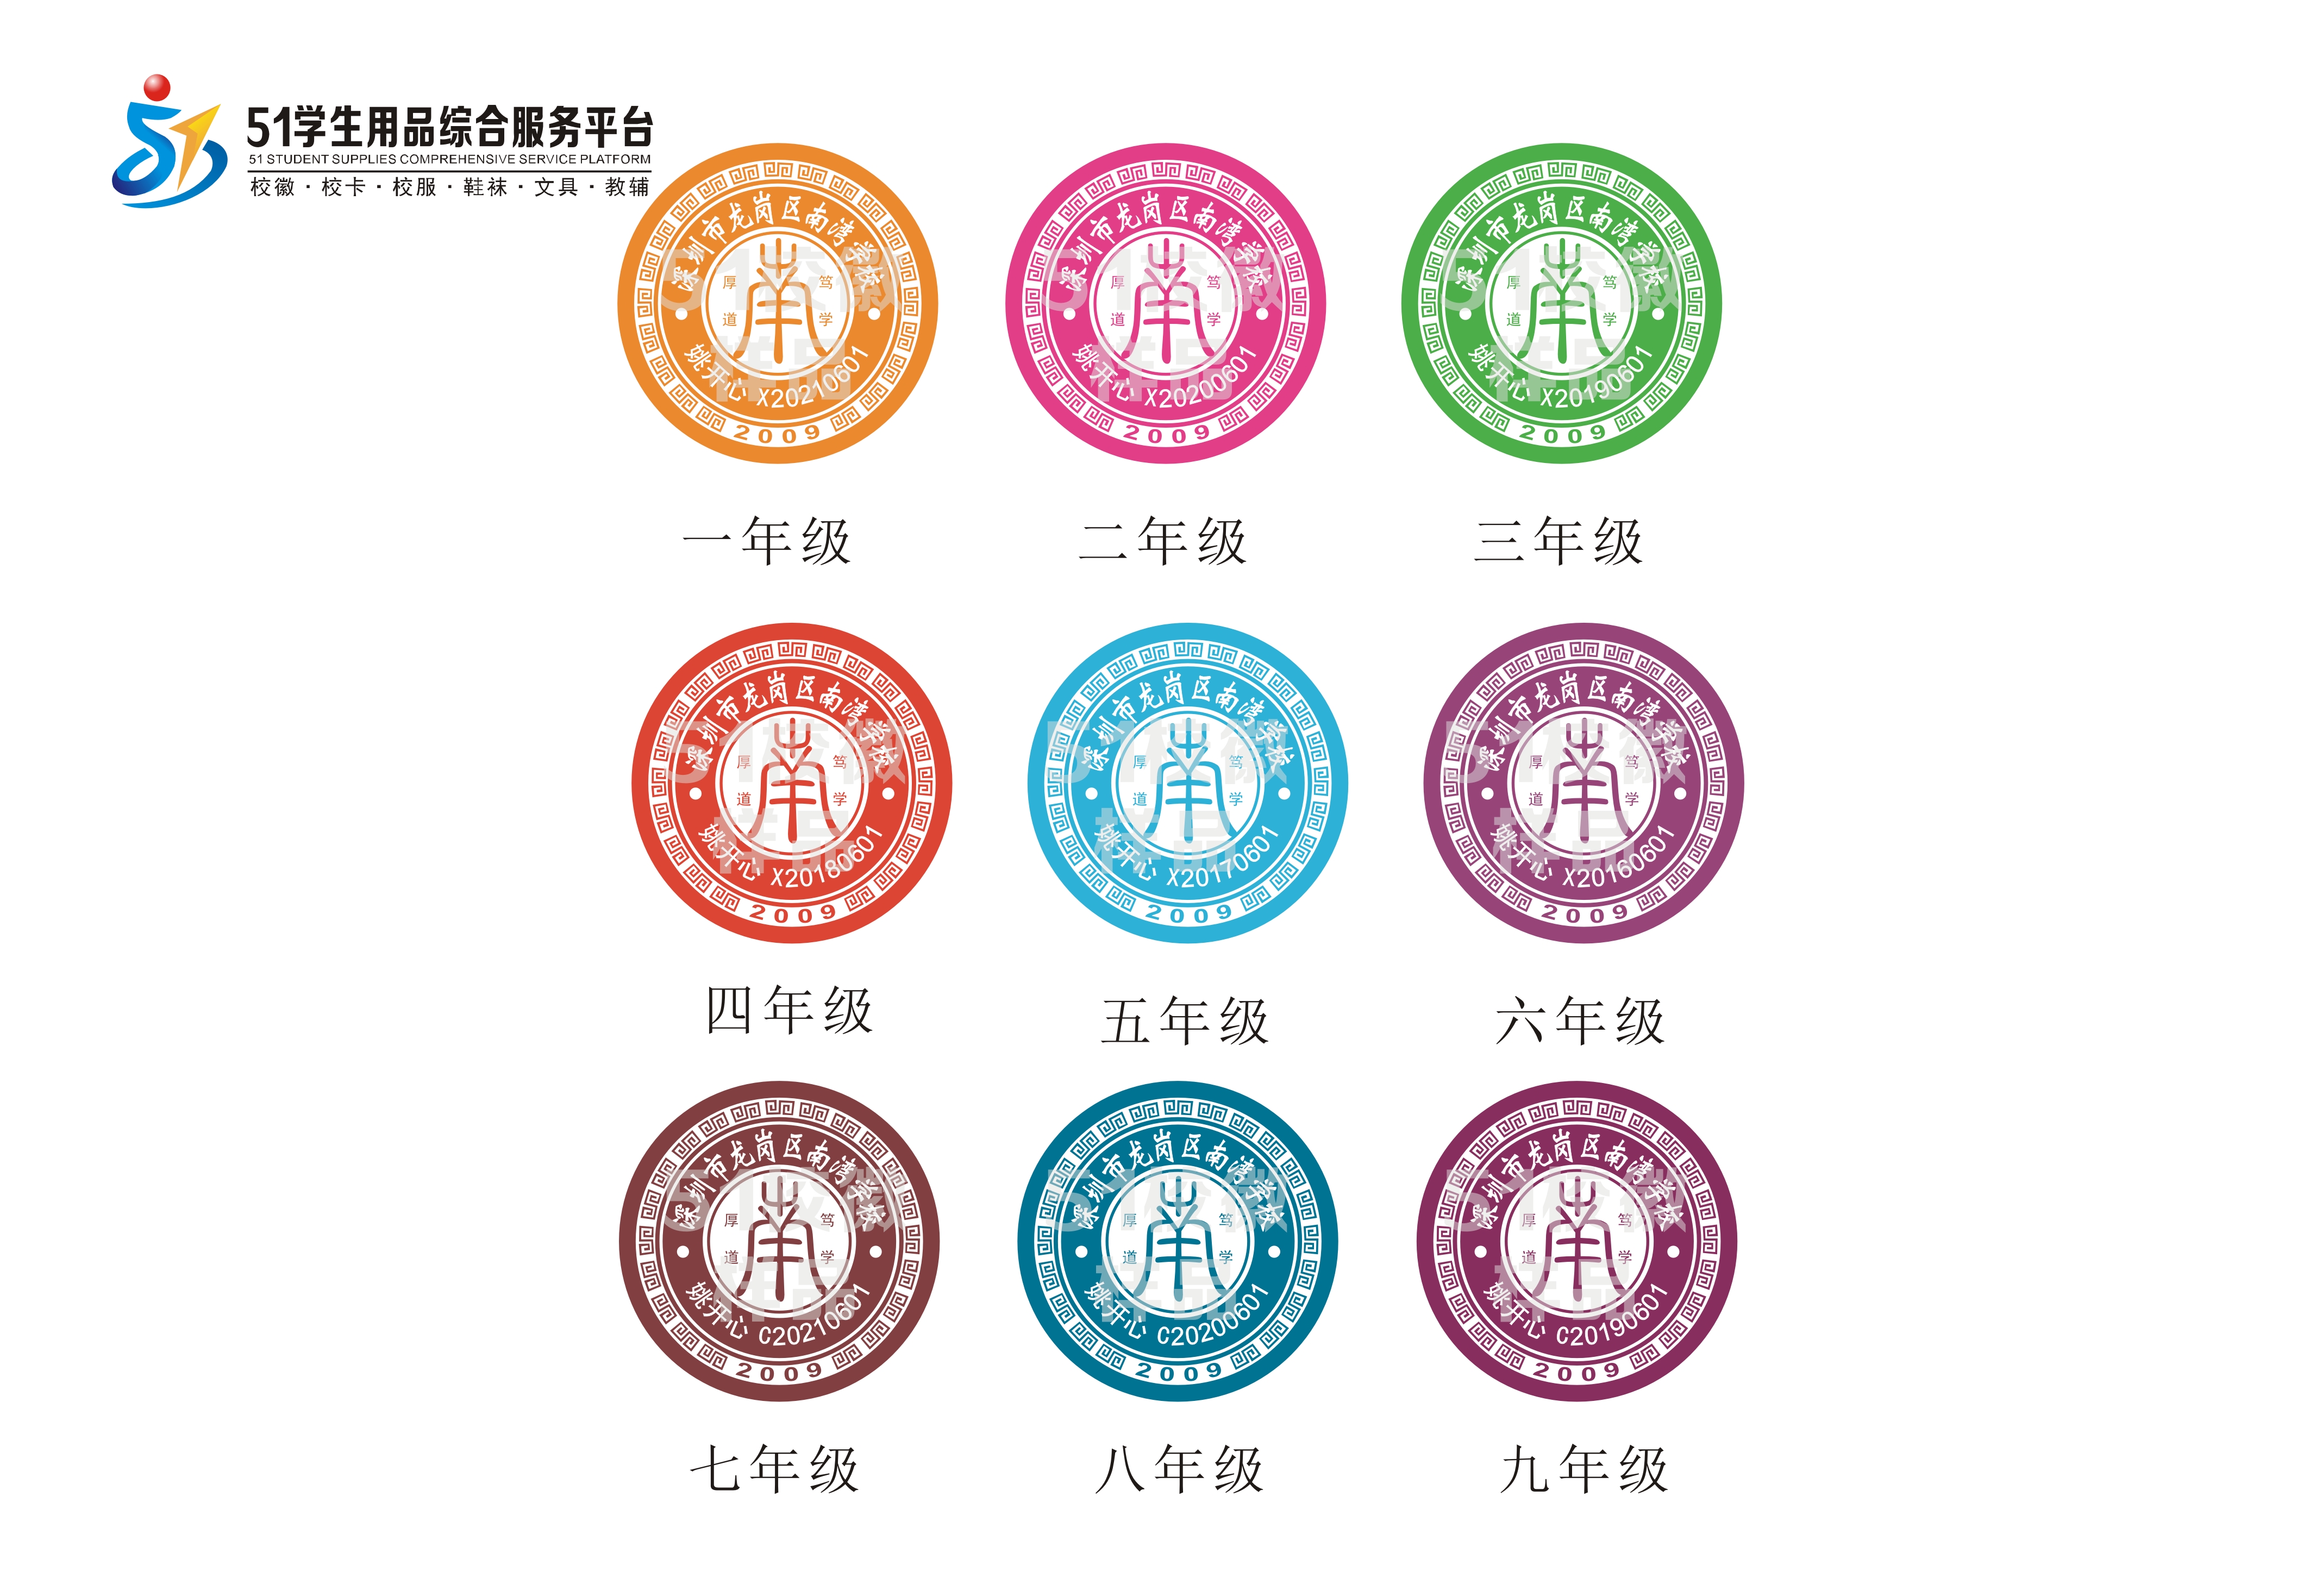 新版深圳市龙岗区南湾学校校徽学生证订购老版和新版校徽都可以使用